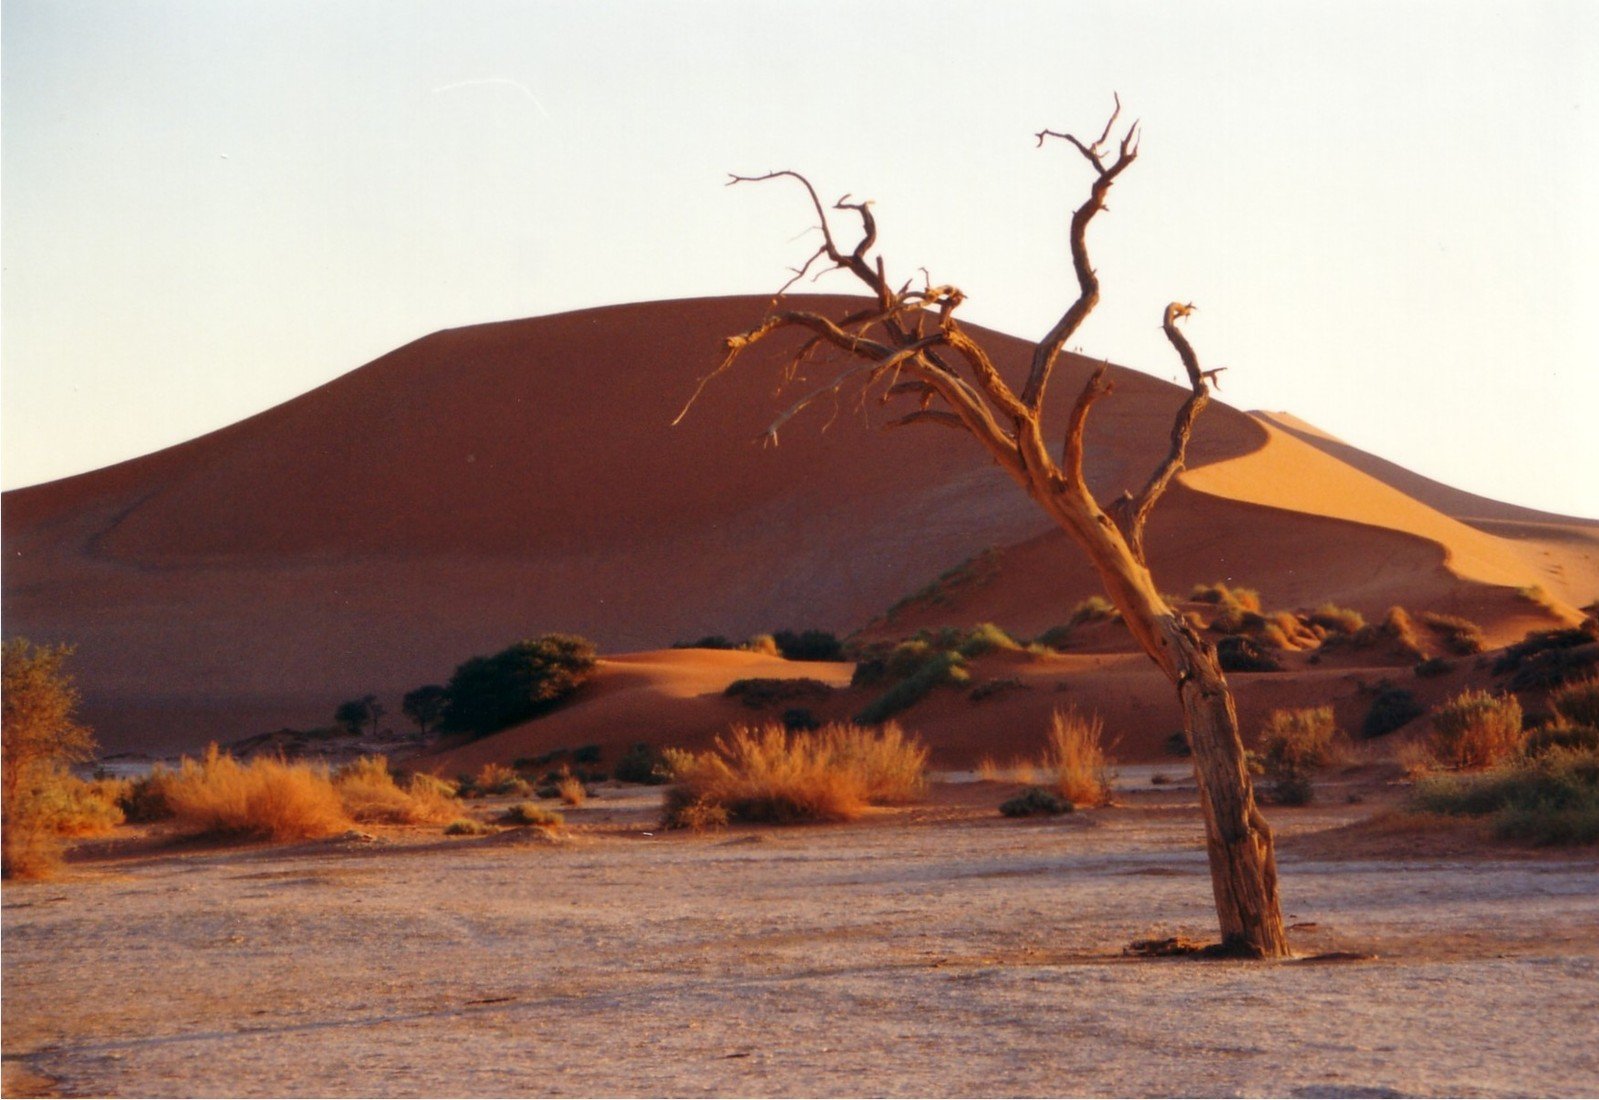 a tree stands alone in a barren field